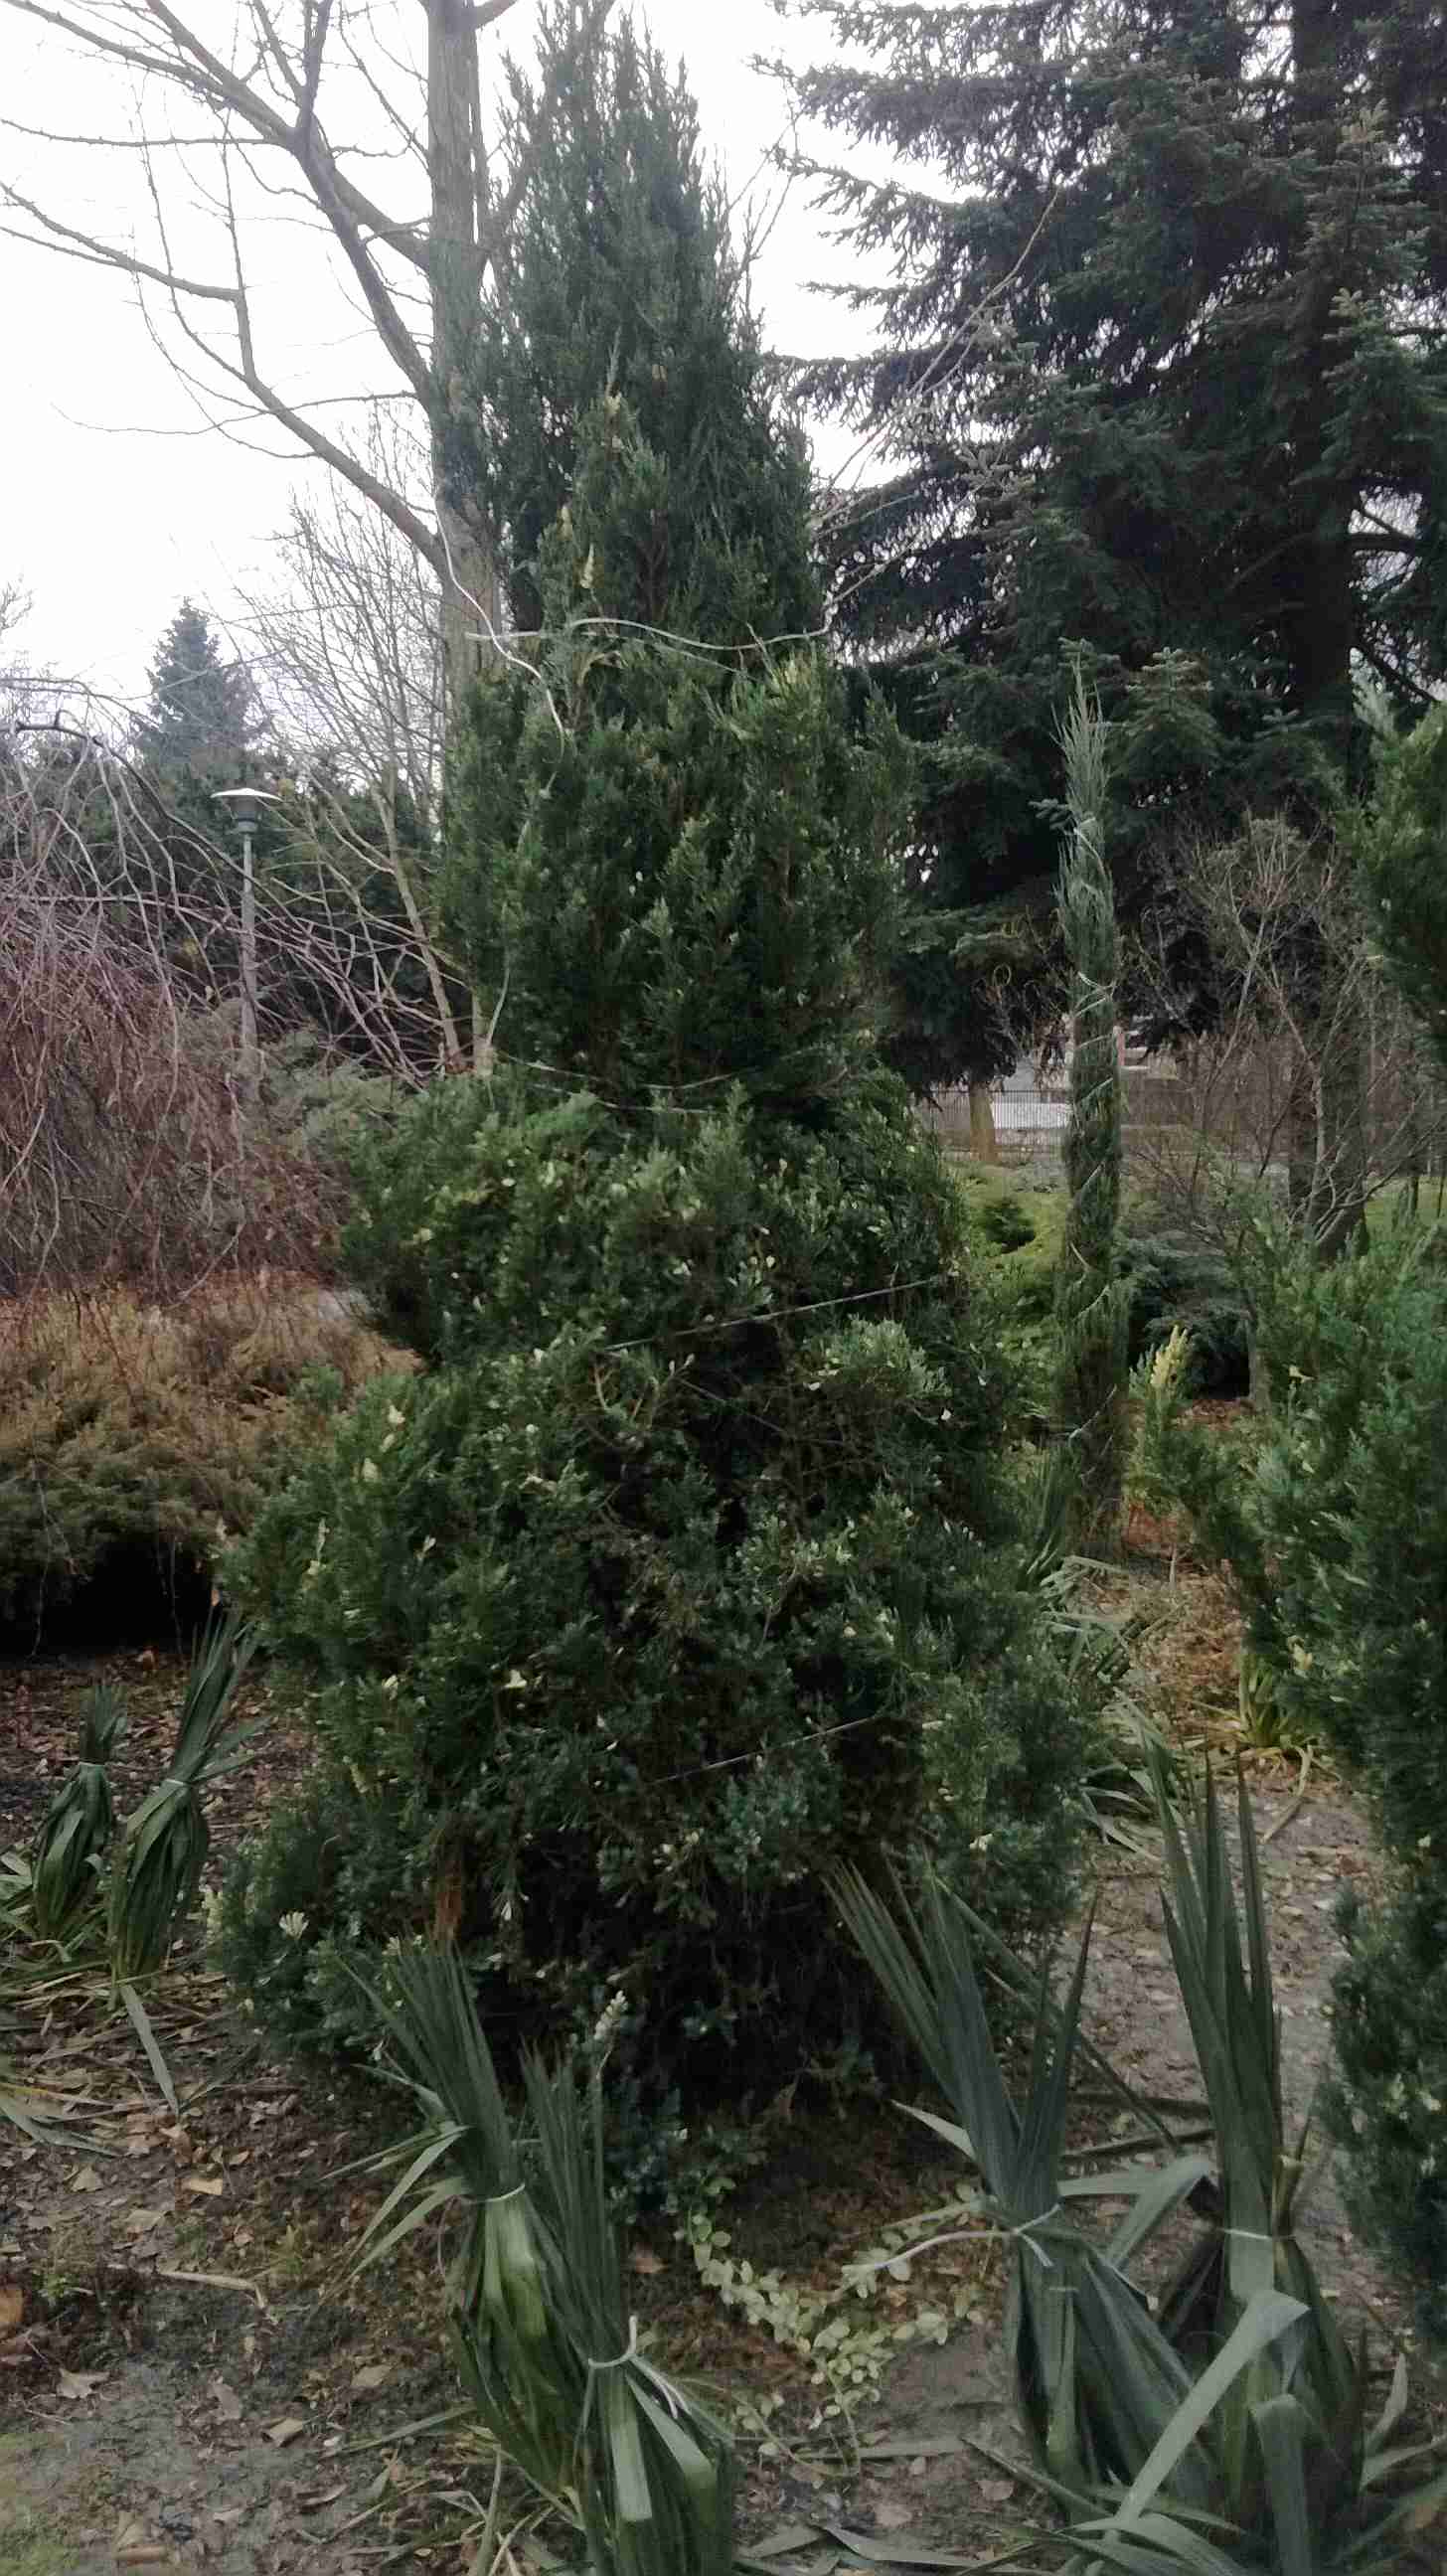 obwiązanie krzewów iglastych zabezpiecza rośliny przed śniegiem